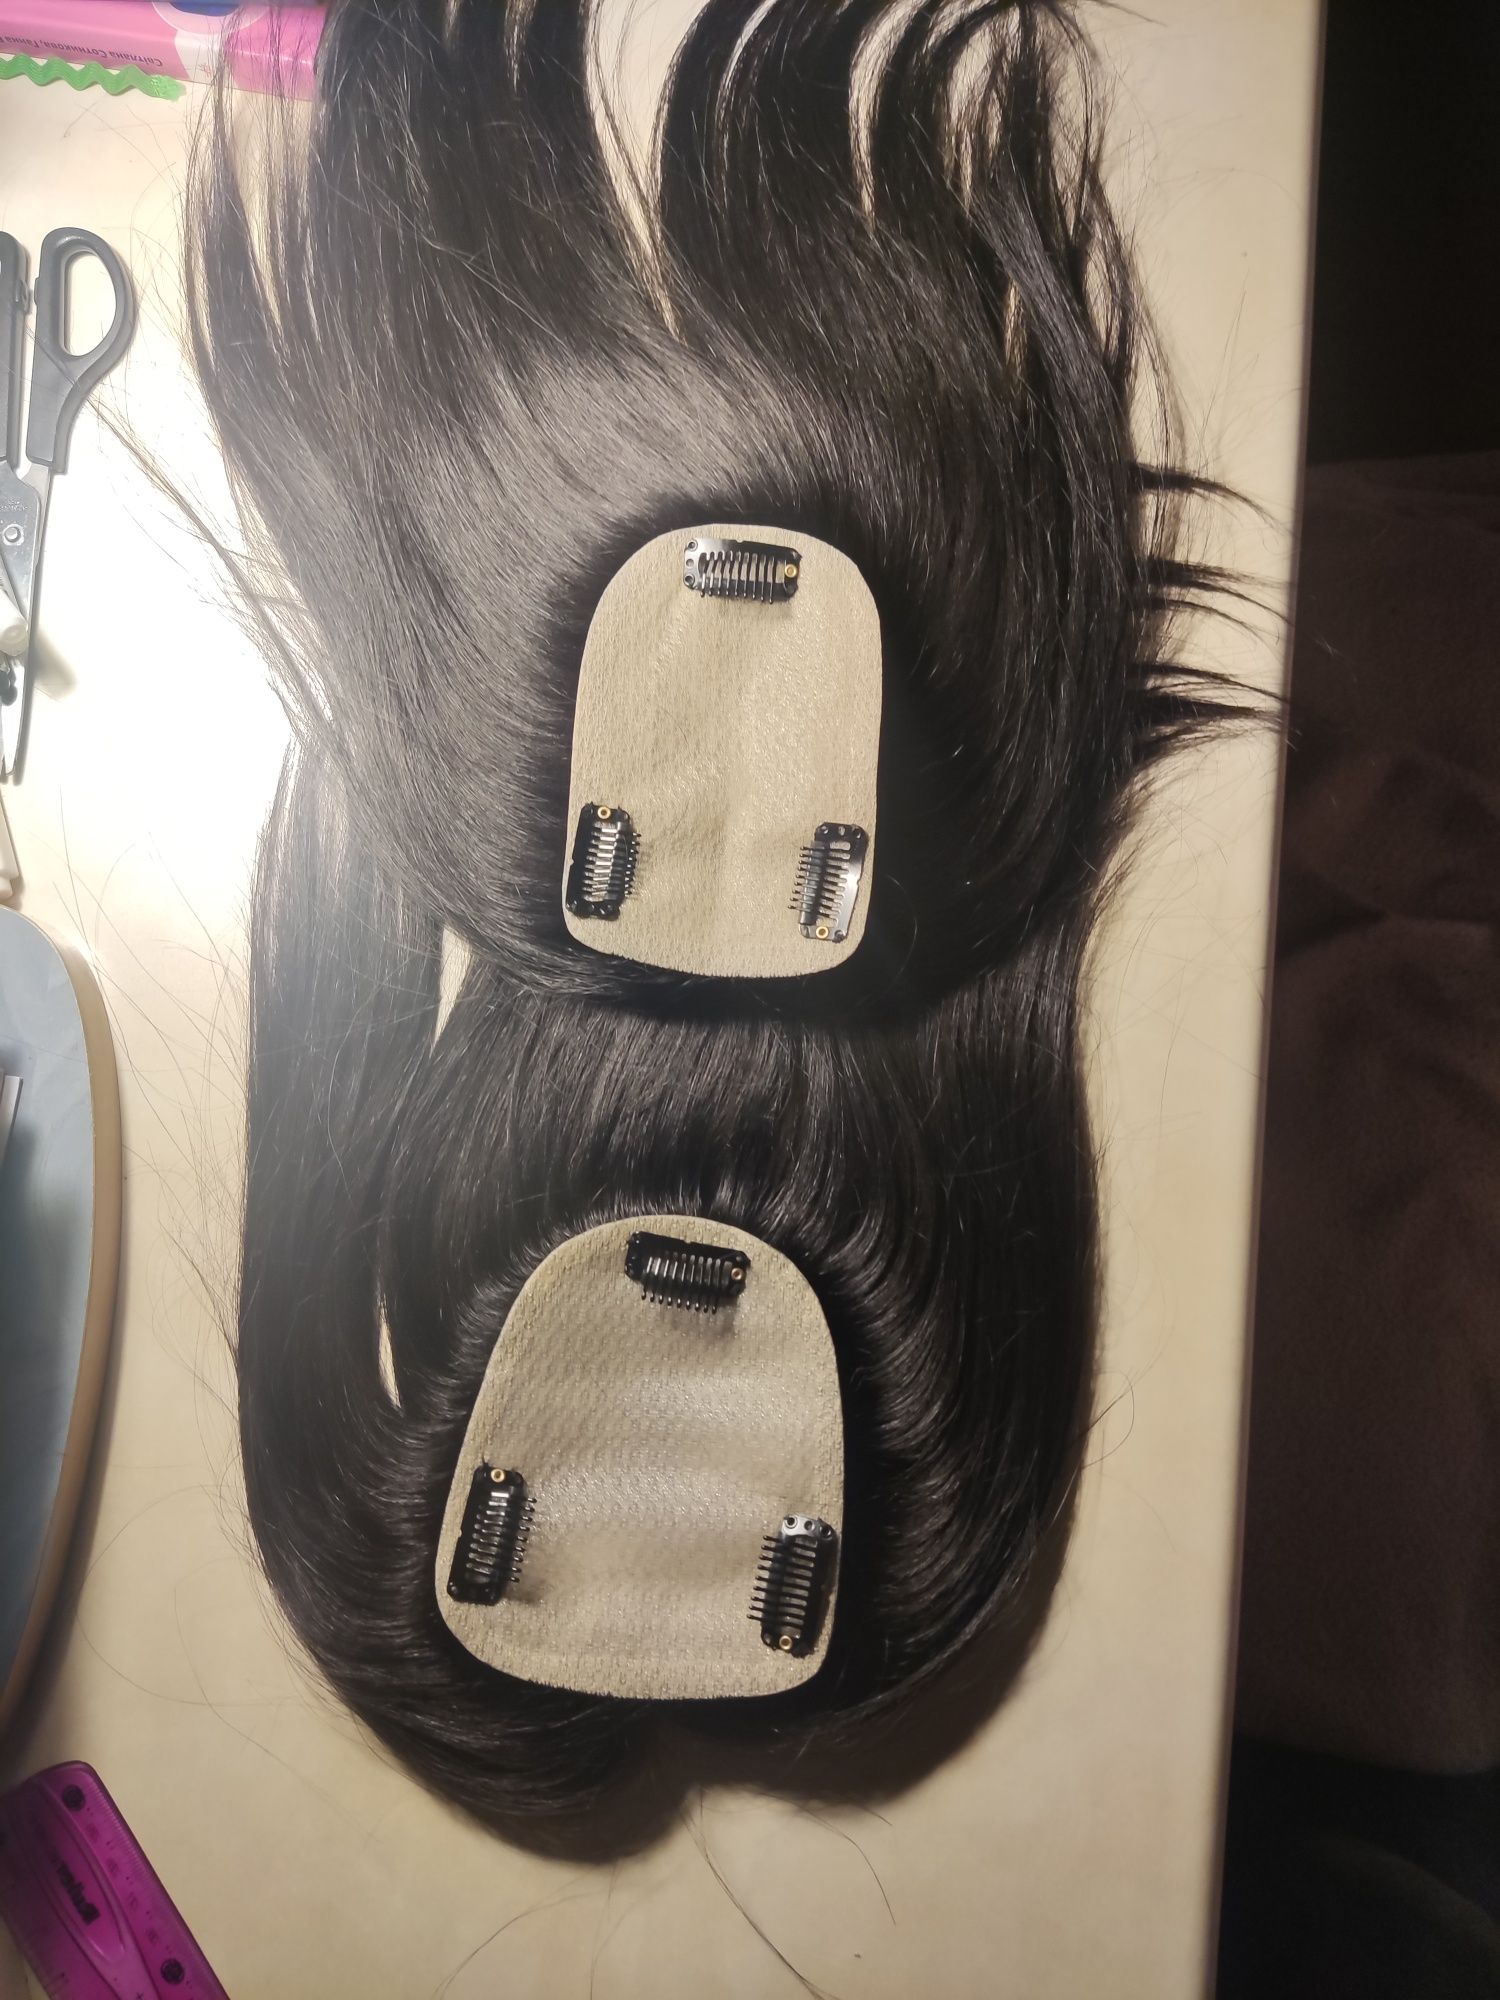 Накладка для волос натуральные волосы парик шиньон топпер